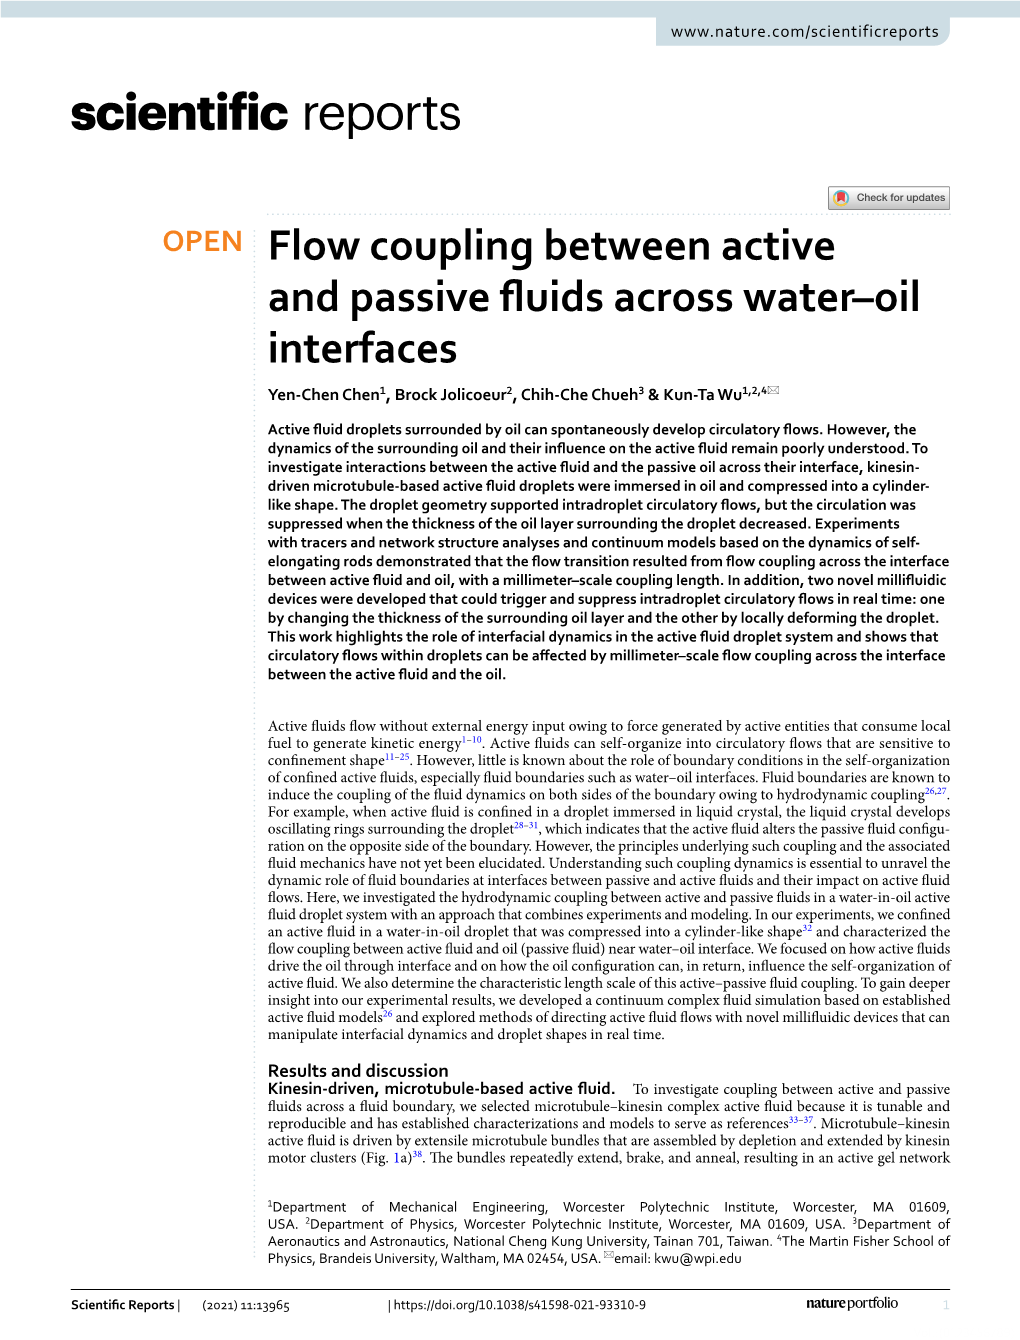 Flow Coupling Between Active and Passive Fluids Across Water–Oil